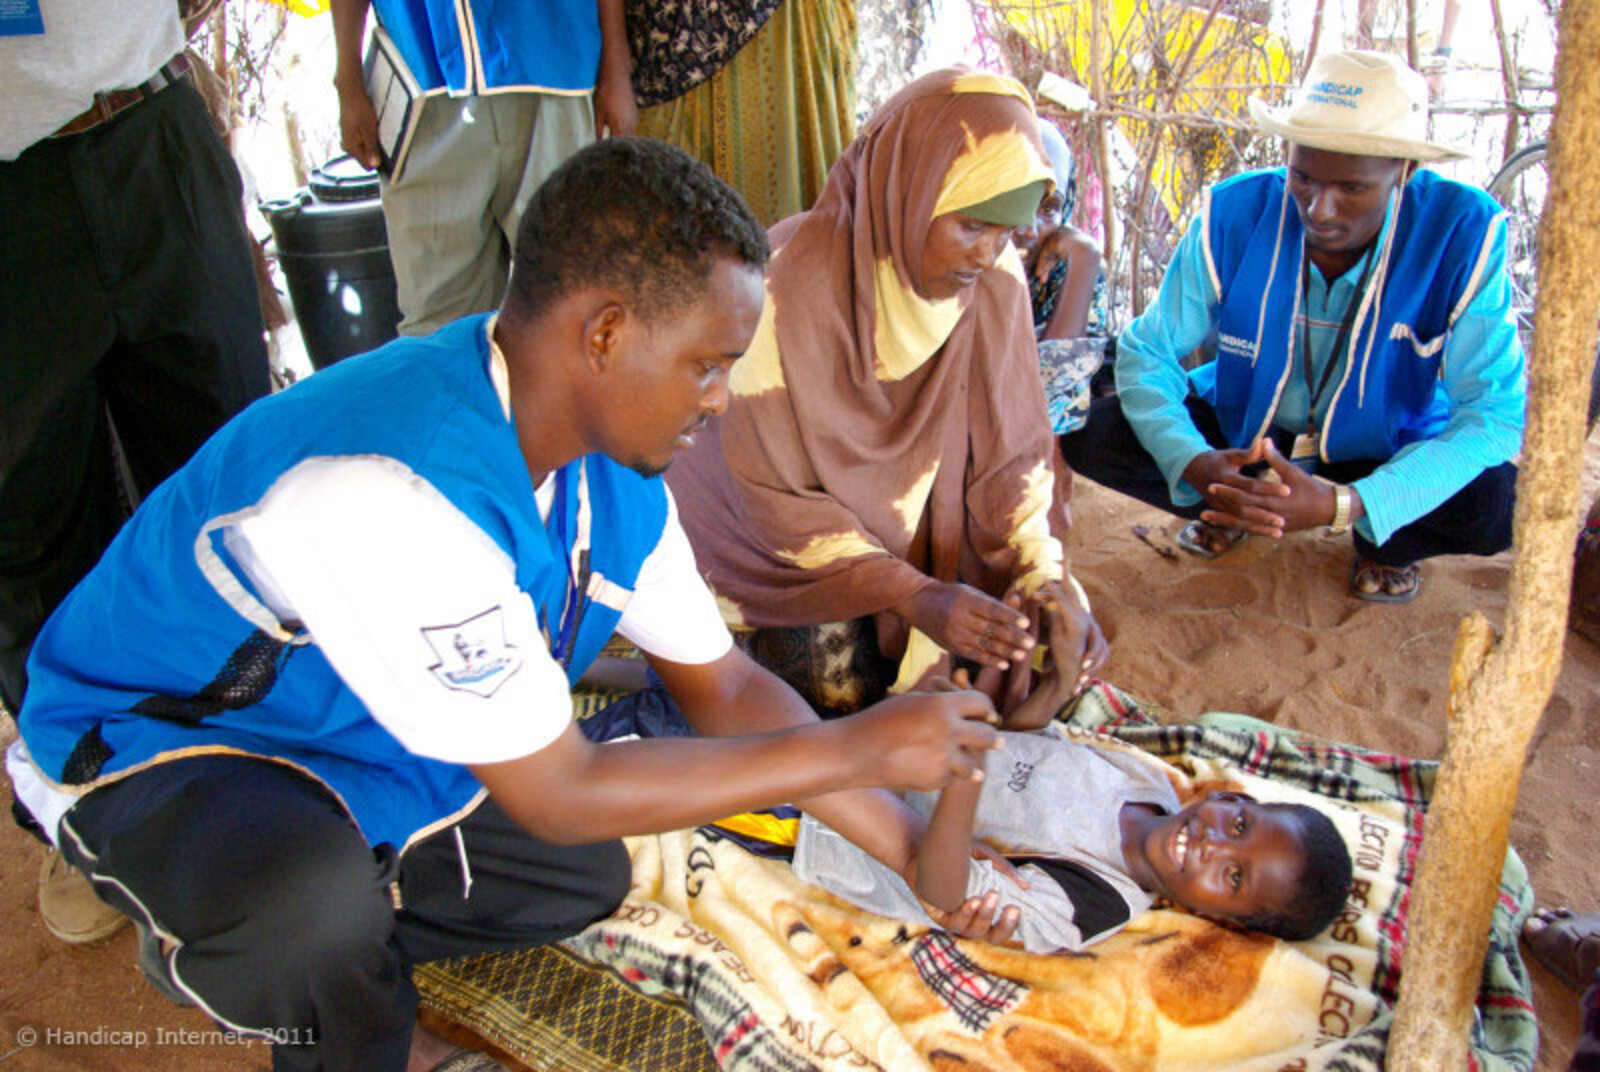 Handicap International ist seit 2008 im Flüchtlingscamp Dadaab tätig. Hauptaufgabe ist die Verbesserung der Barrierefreiheit und die Unterstützung von Menschen mit Behinderungen. Mit sechs mobilen Teams versorgt Handicap International Menschen mit Behinde